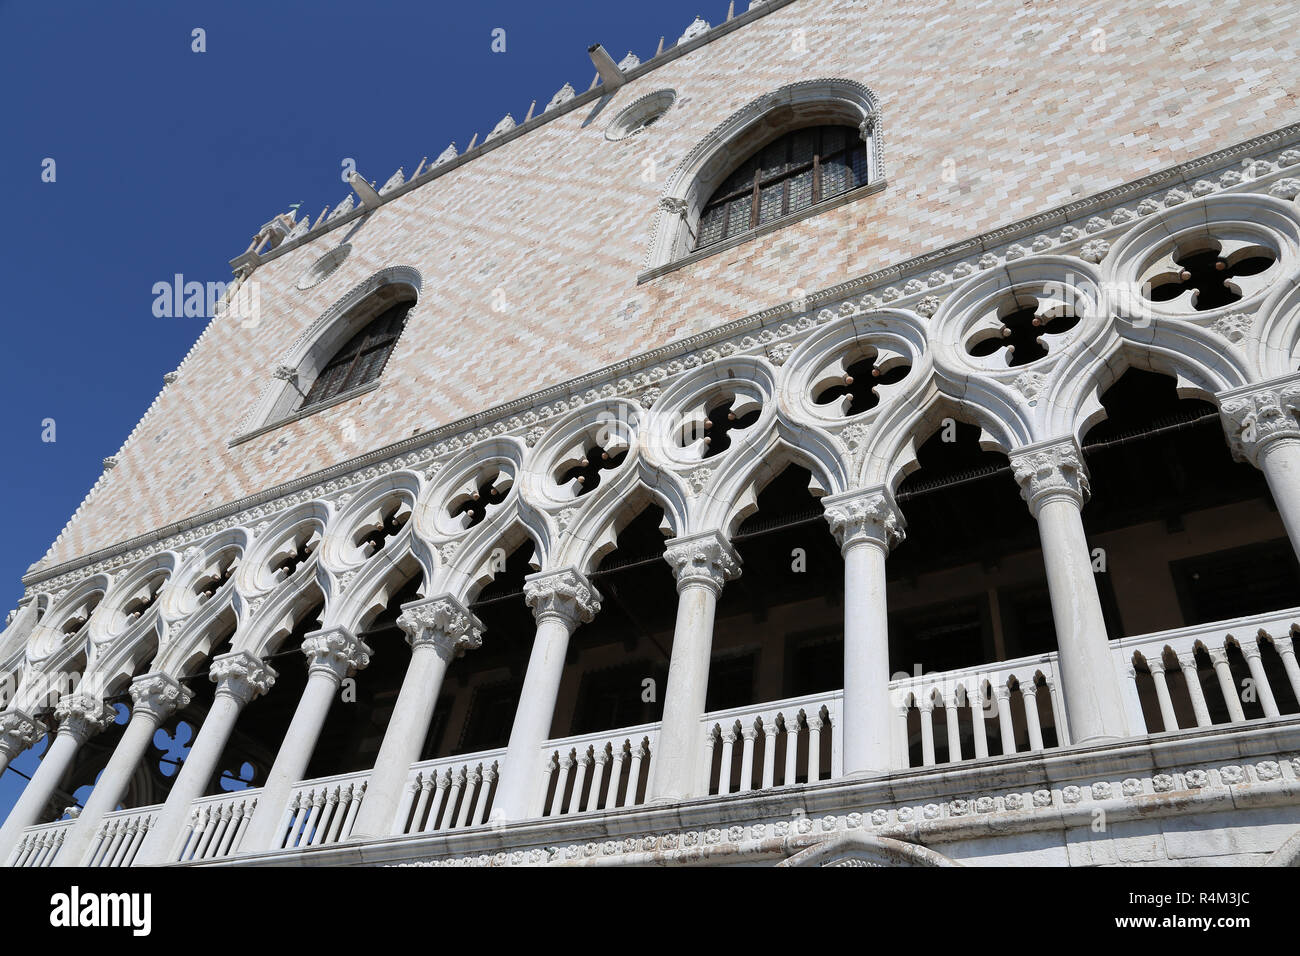 Italia. Venecia. El Palacio de los Doges. 14th-15th siglo. De estilo gótico veneciano. Fachada. La región del Veneto. Foto de stock